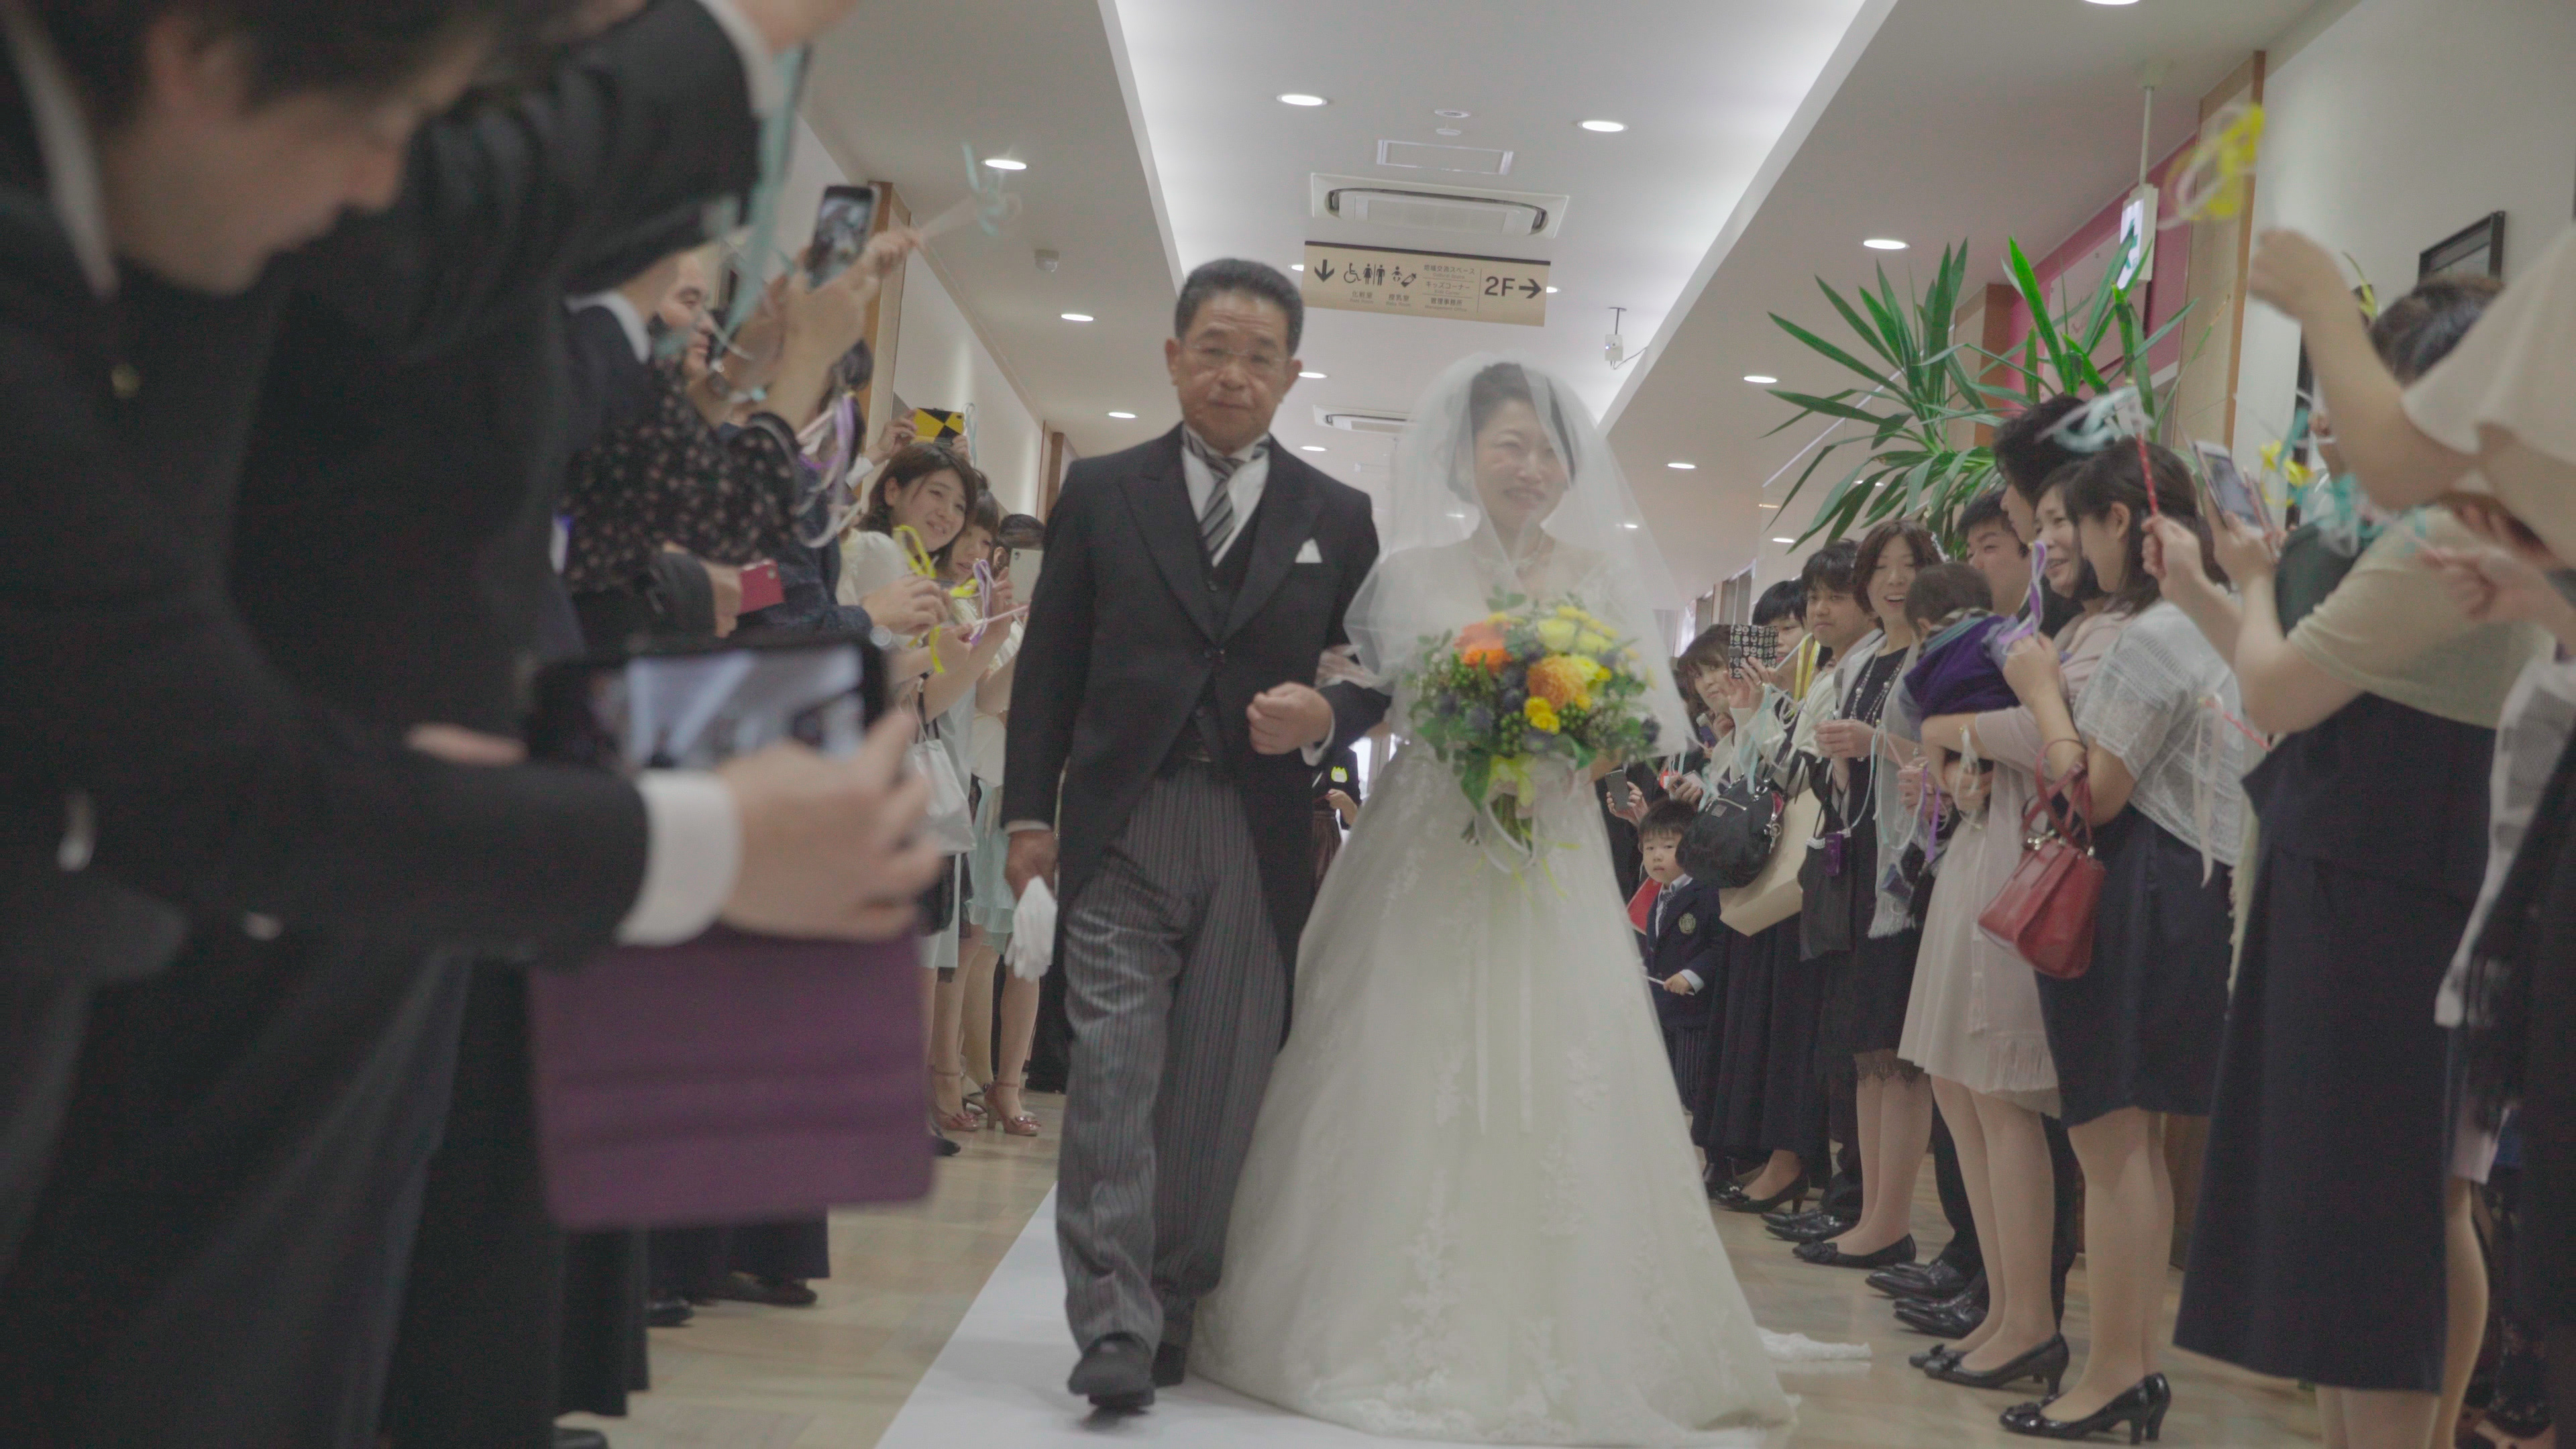 3rdeyeproject 福島市 郡山 仙台 結婚式 ビデオ ウェディング ムービー WEDDING Pasenaka